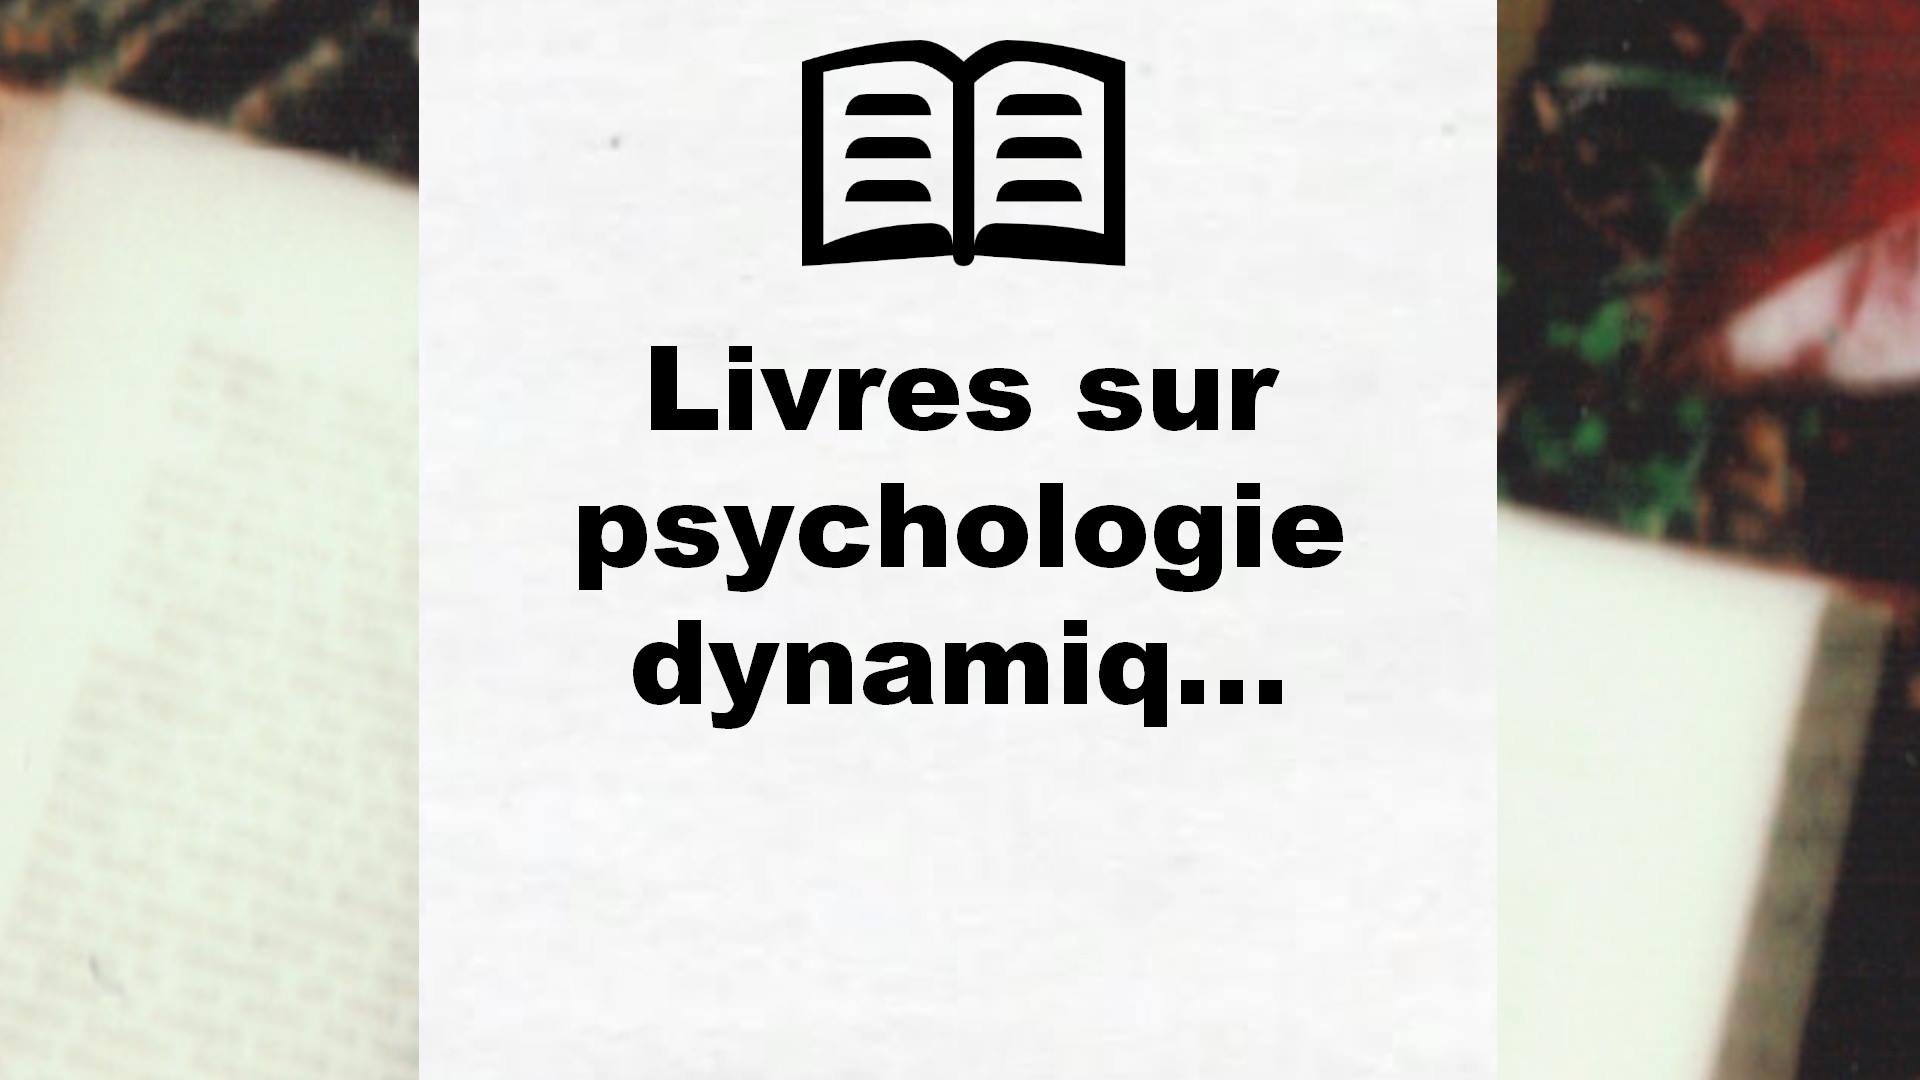 Livres sur psychologie dynamique